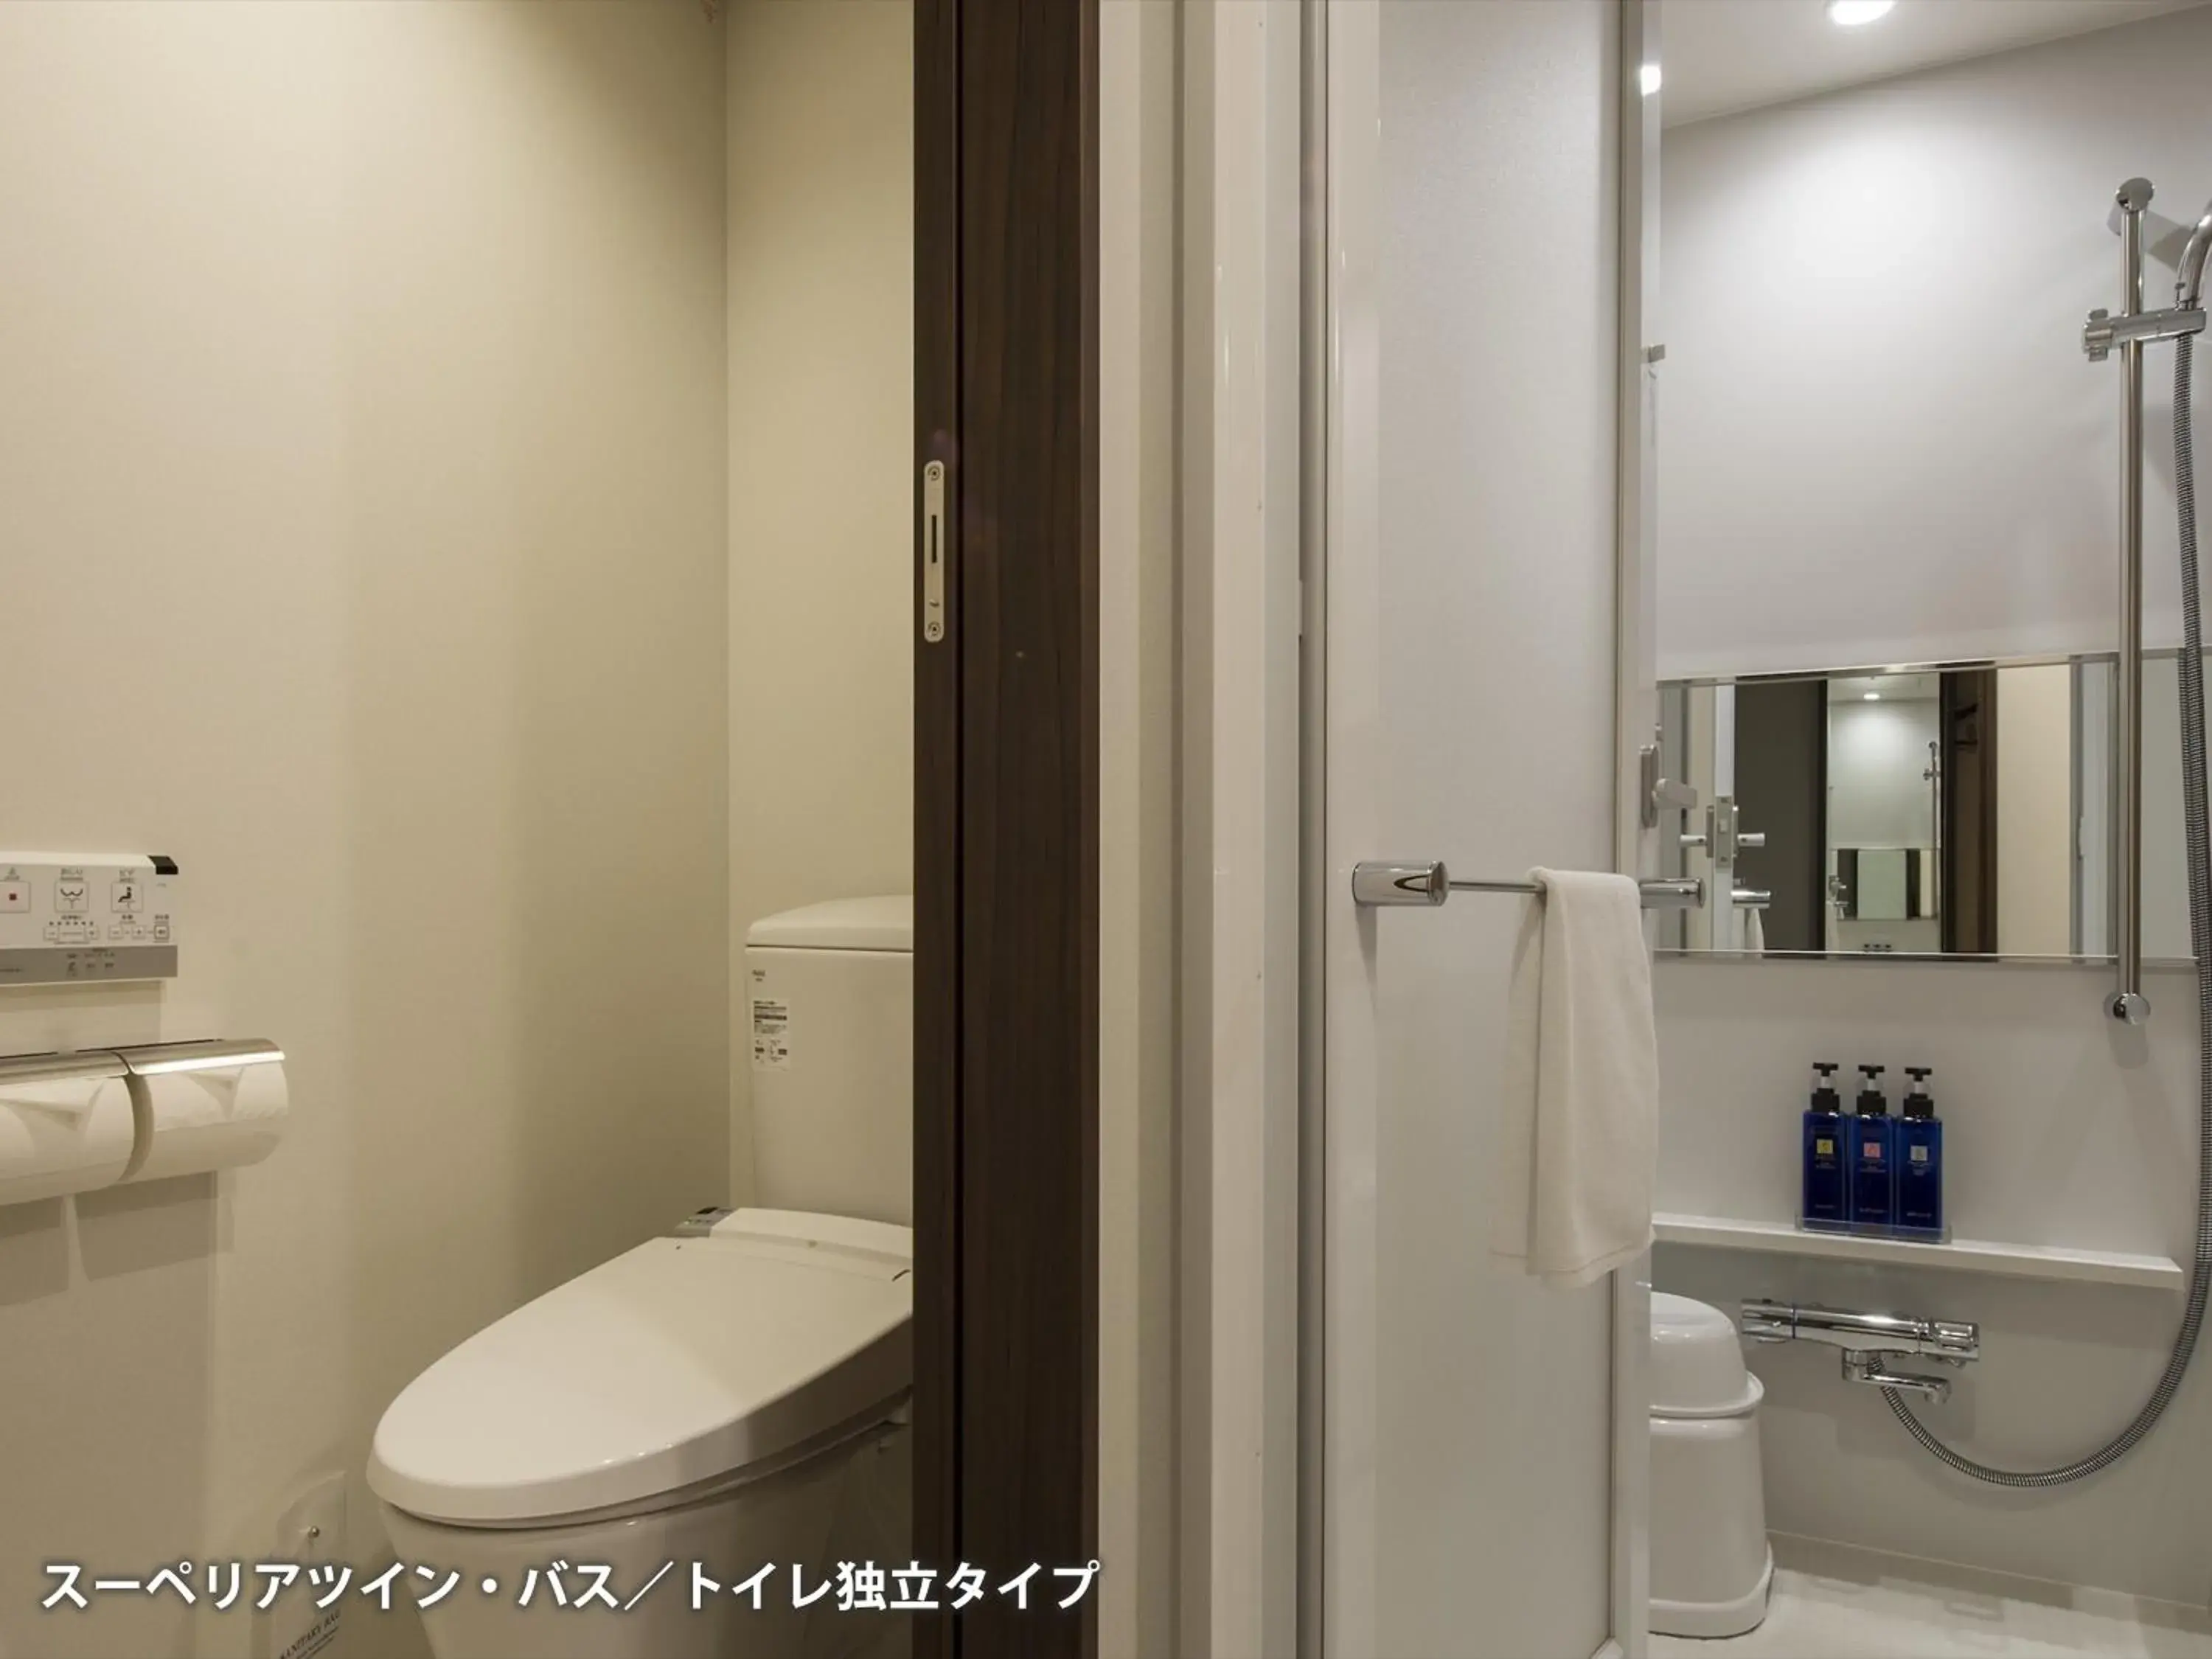 Bathroom in Tmark City Hotel Sapporo Odori